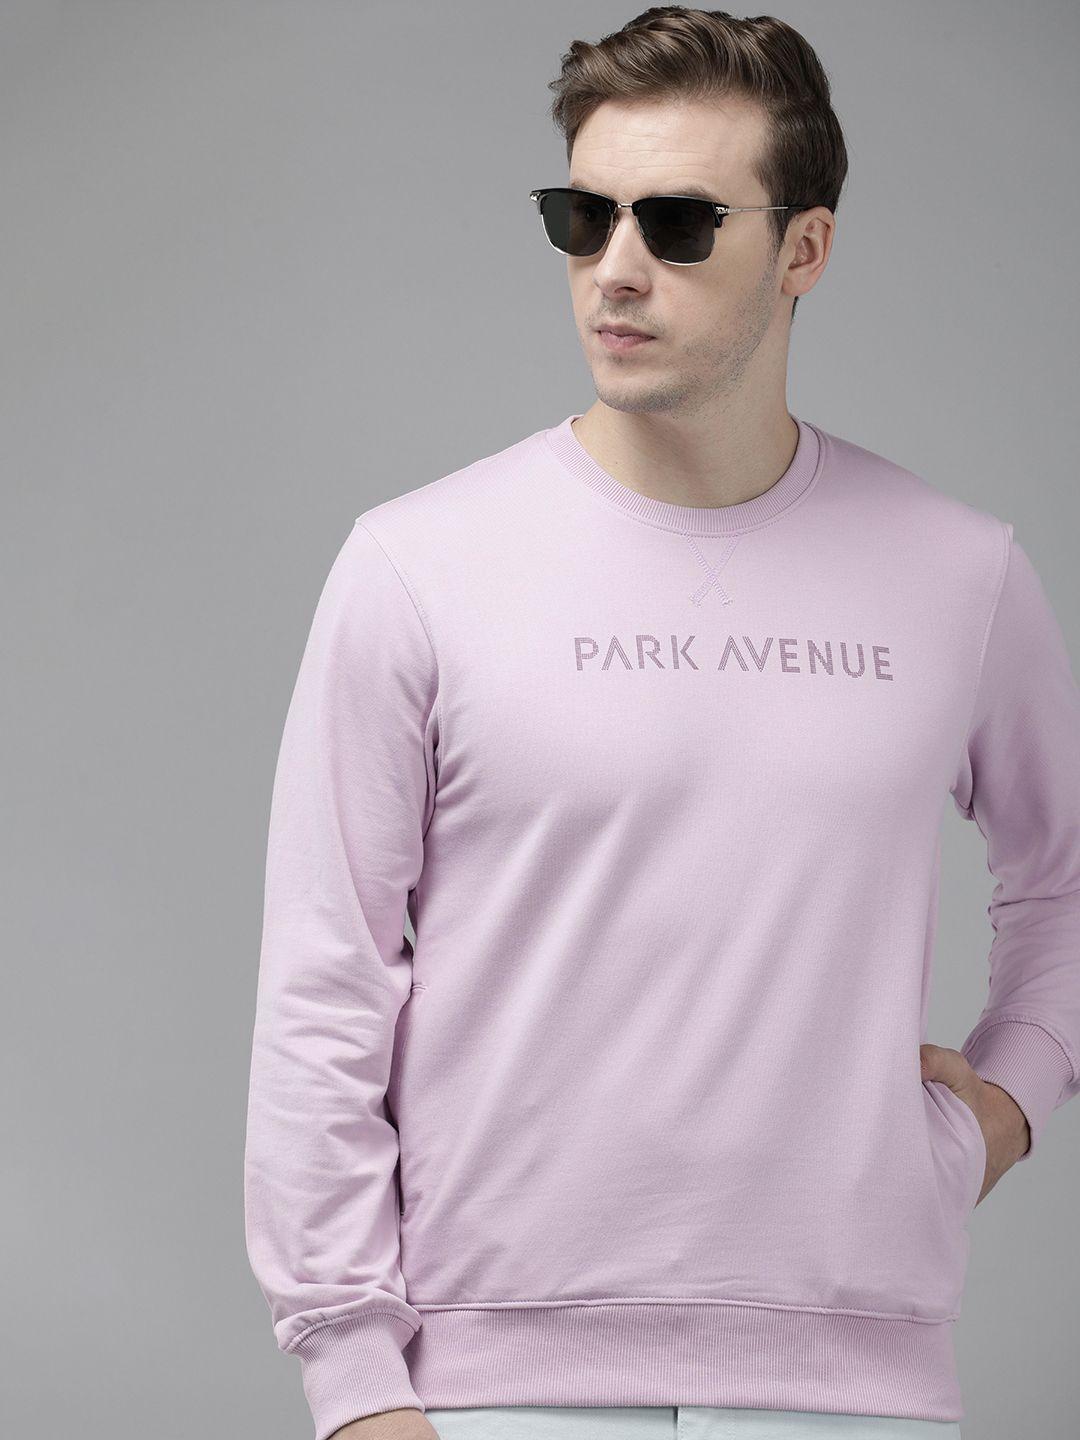 park avenue long sleeves brand logo printed sweatshirt